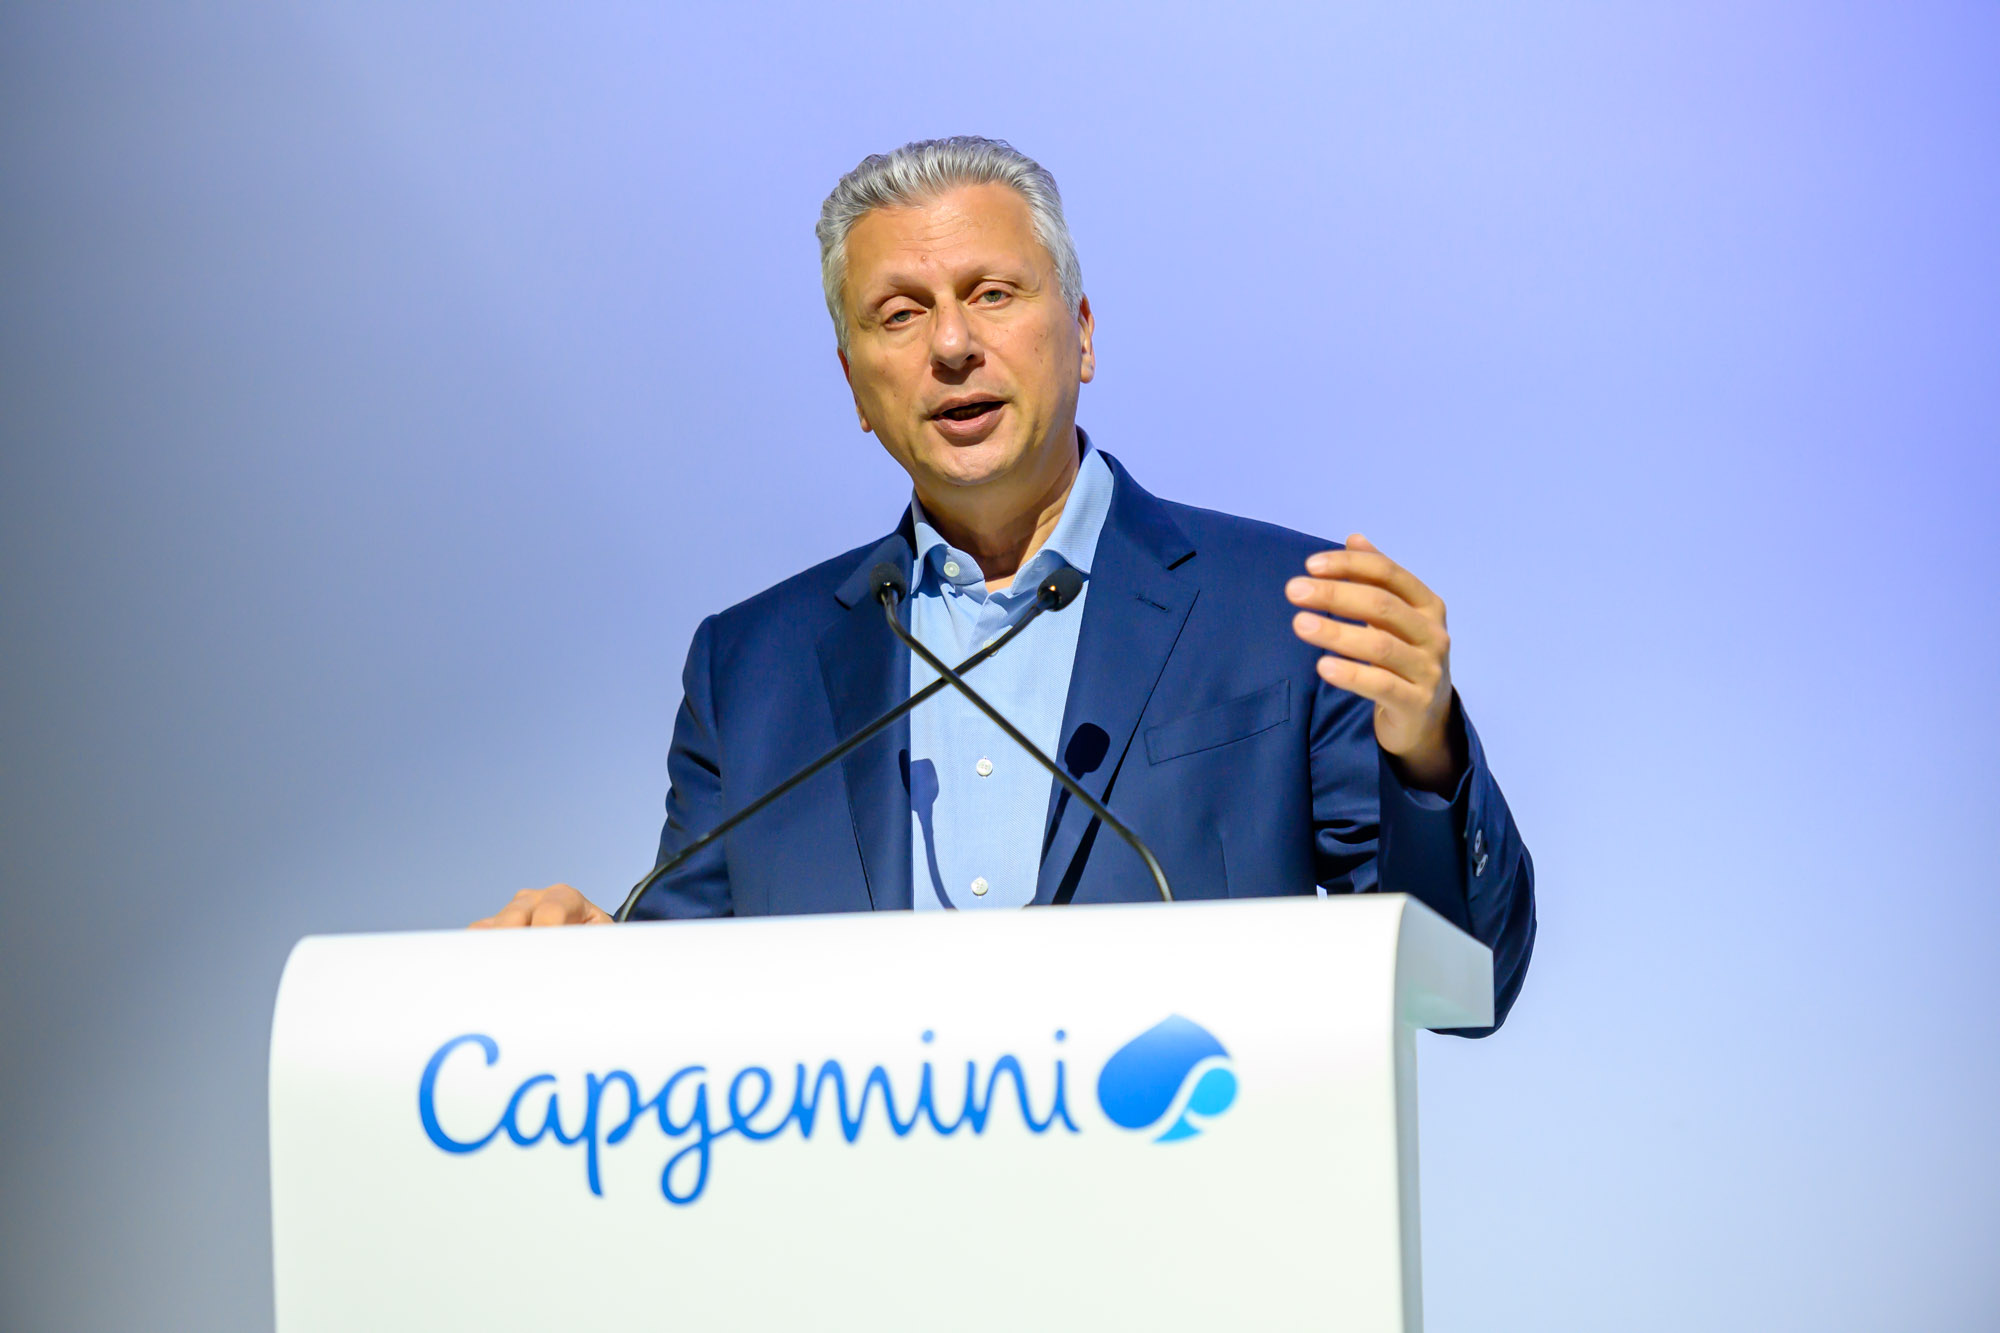 Assemblée générale Capgemini - Aiman Ezzat - Directeur général de Capgemini